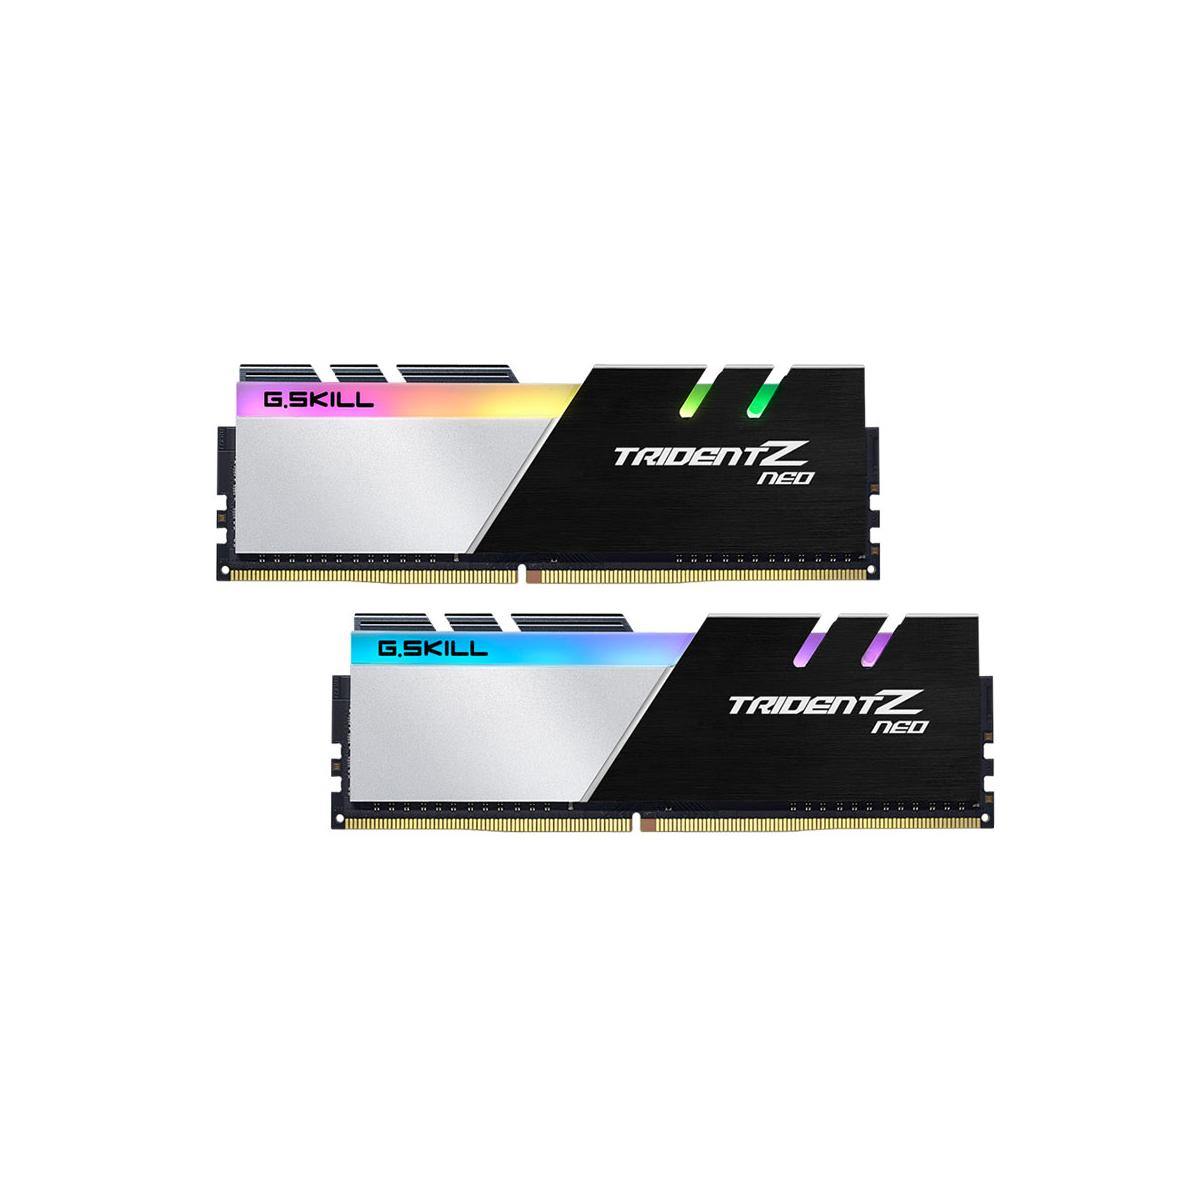 MEM DDR4 GSKILL TRIDENT Z NEO 2x8GB 3600MHZ RGB - F4-3600C18D-16GTZN